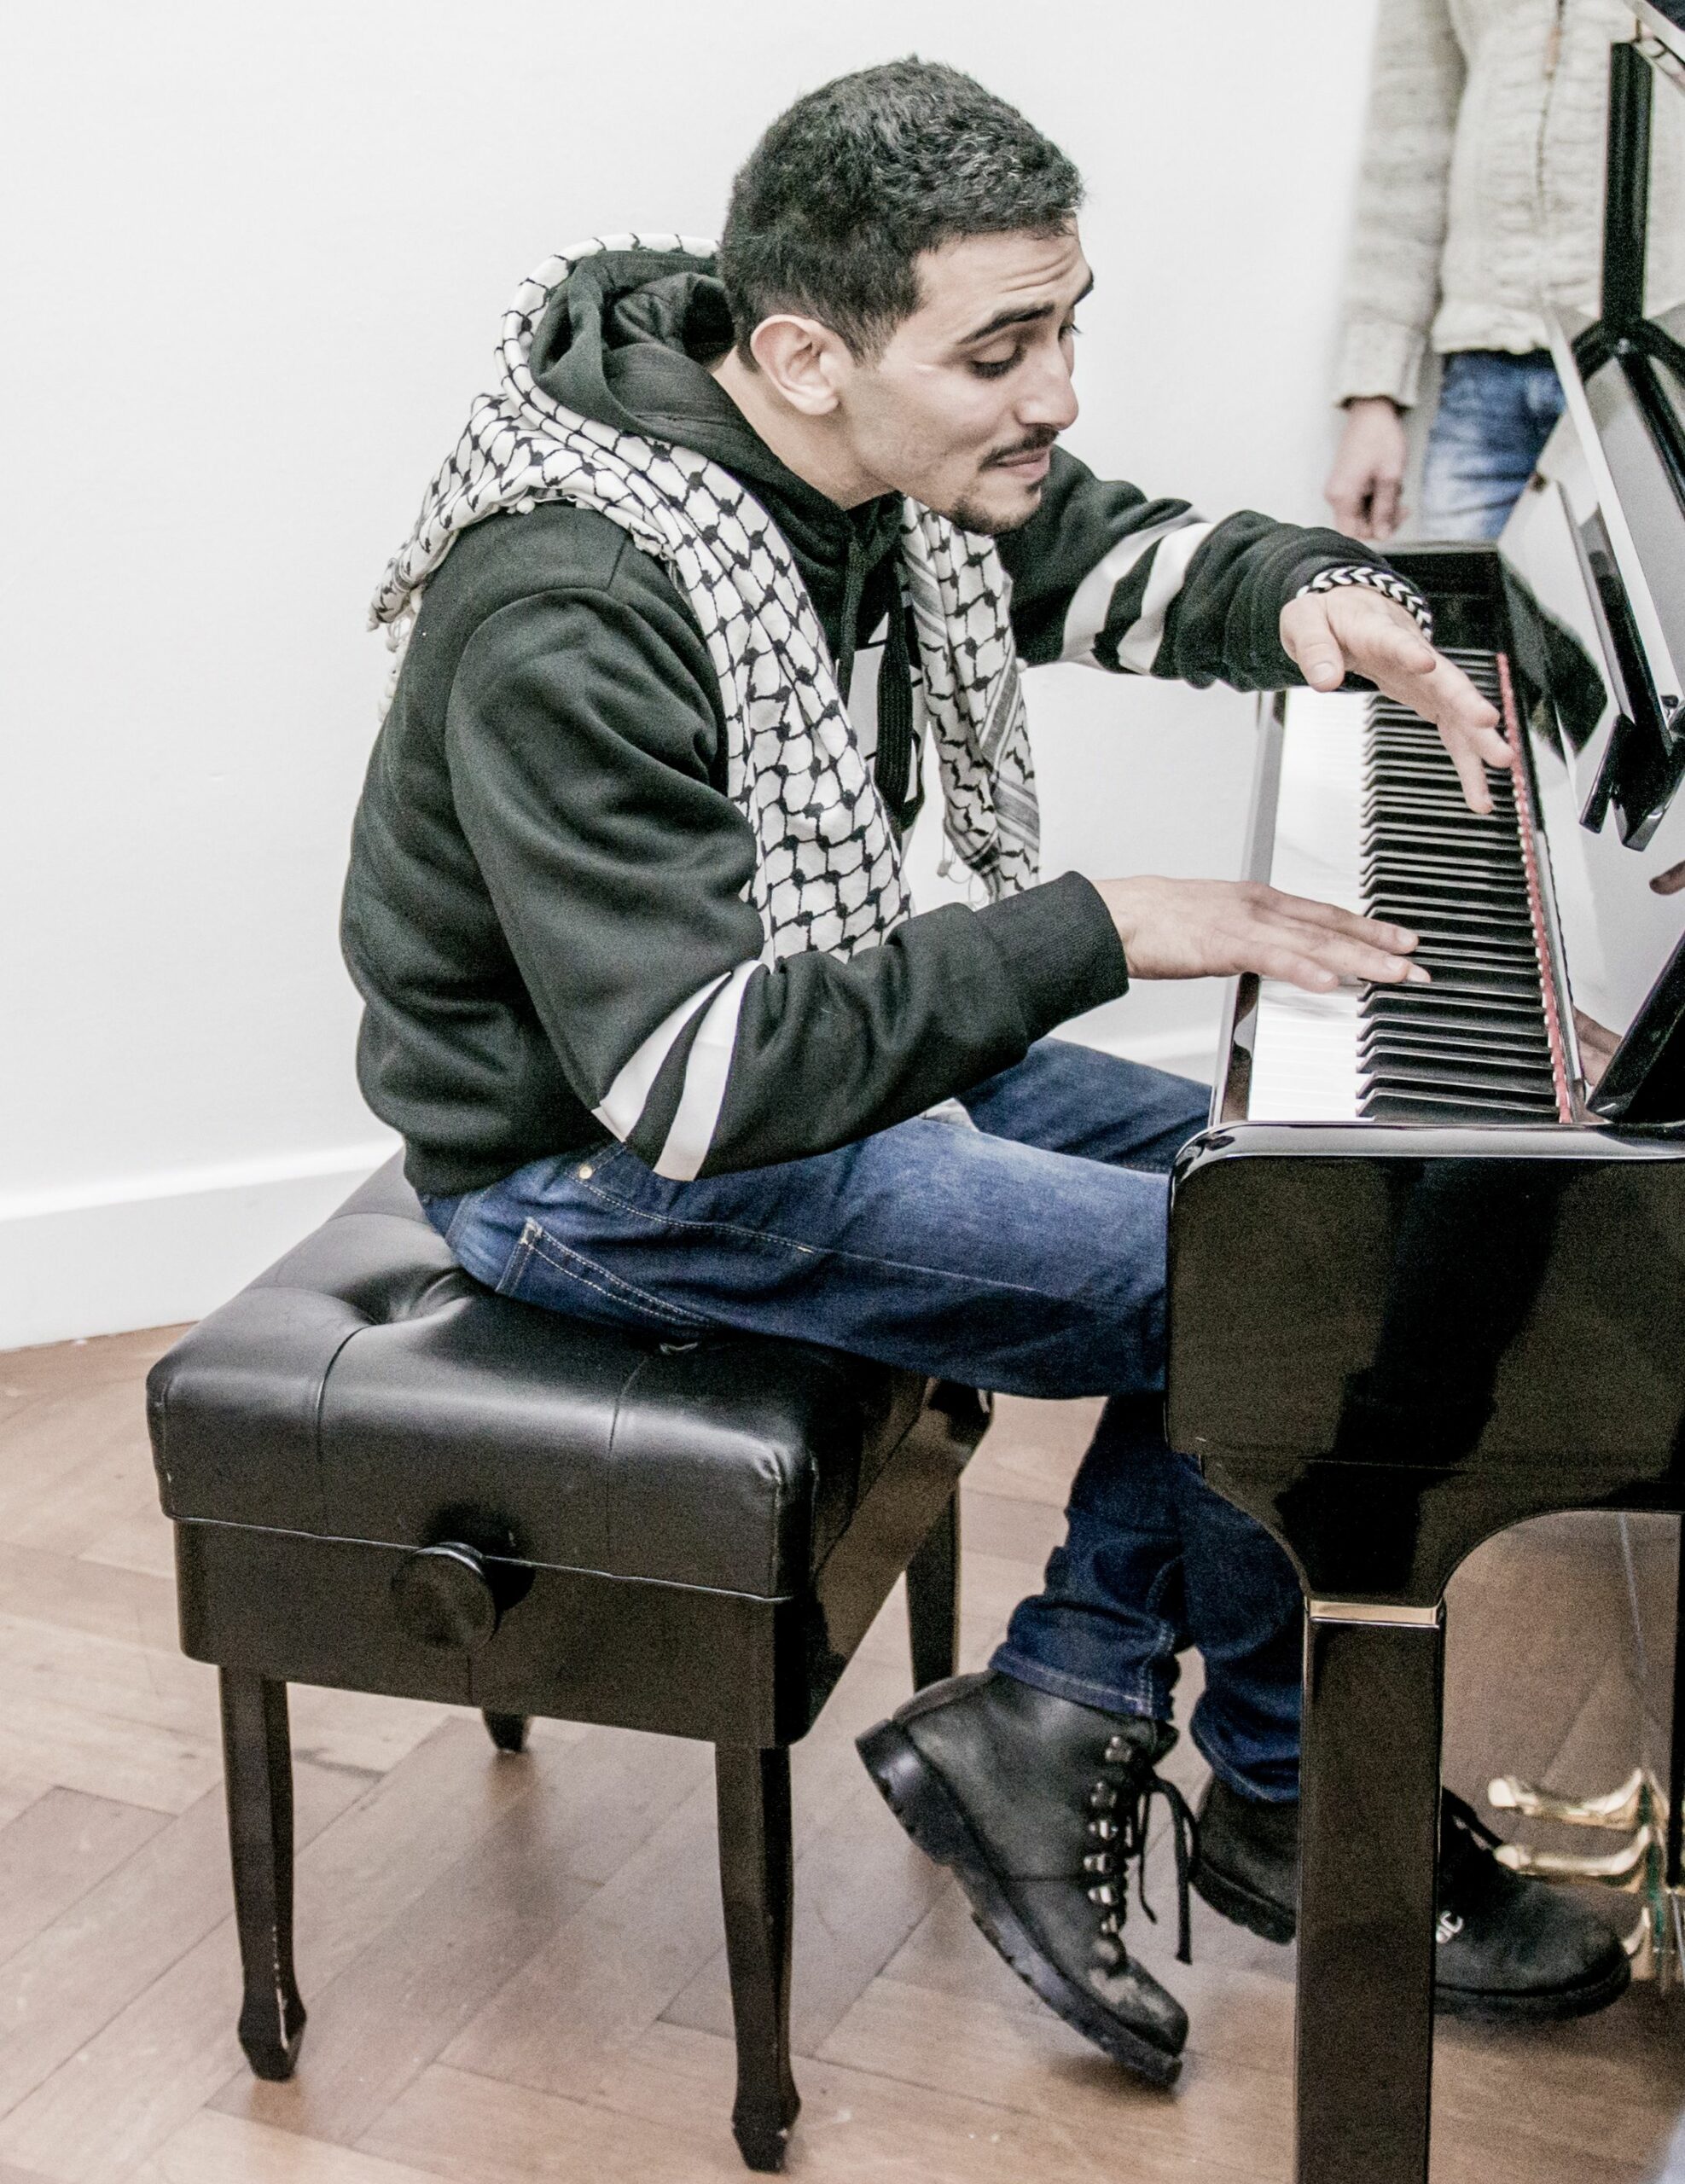 Intensiv, virtuos, emotional und mitreißend: Aeham Ahmad gibt heute Klavierkonzert im Foyer des Staatstheaters